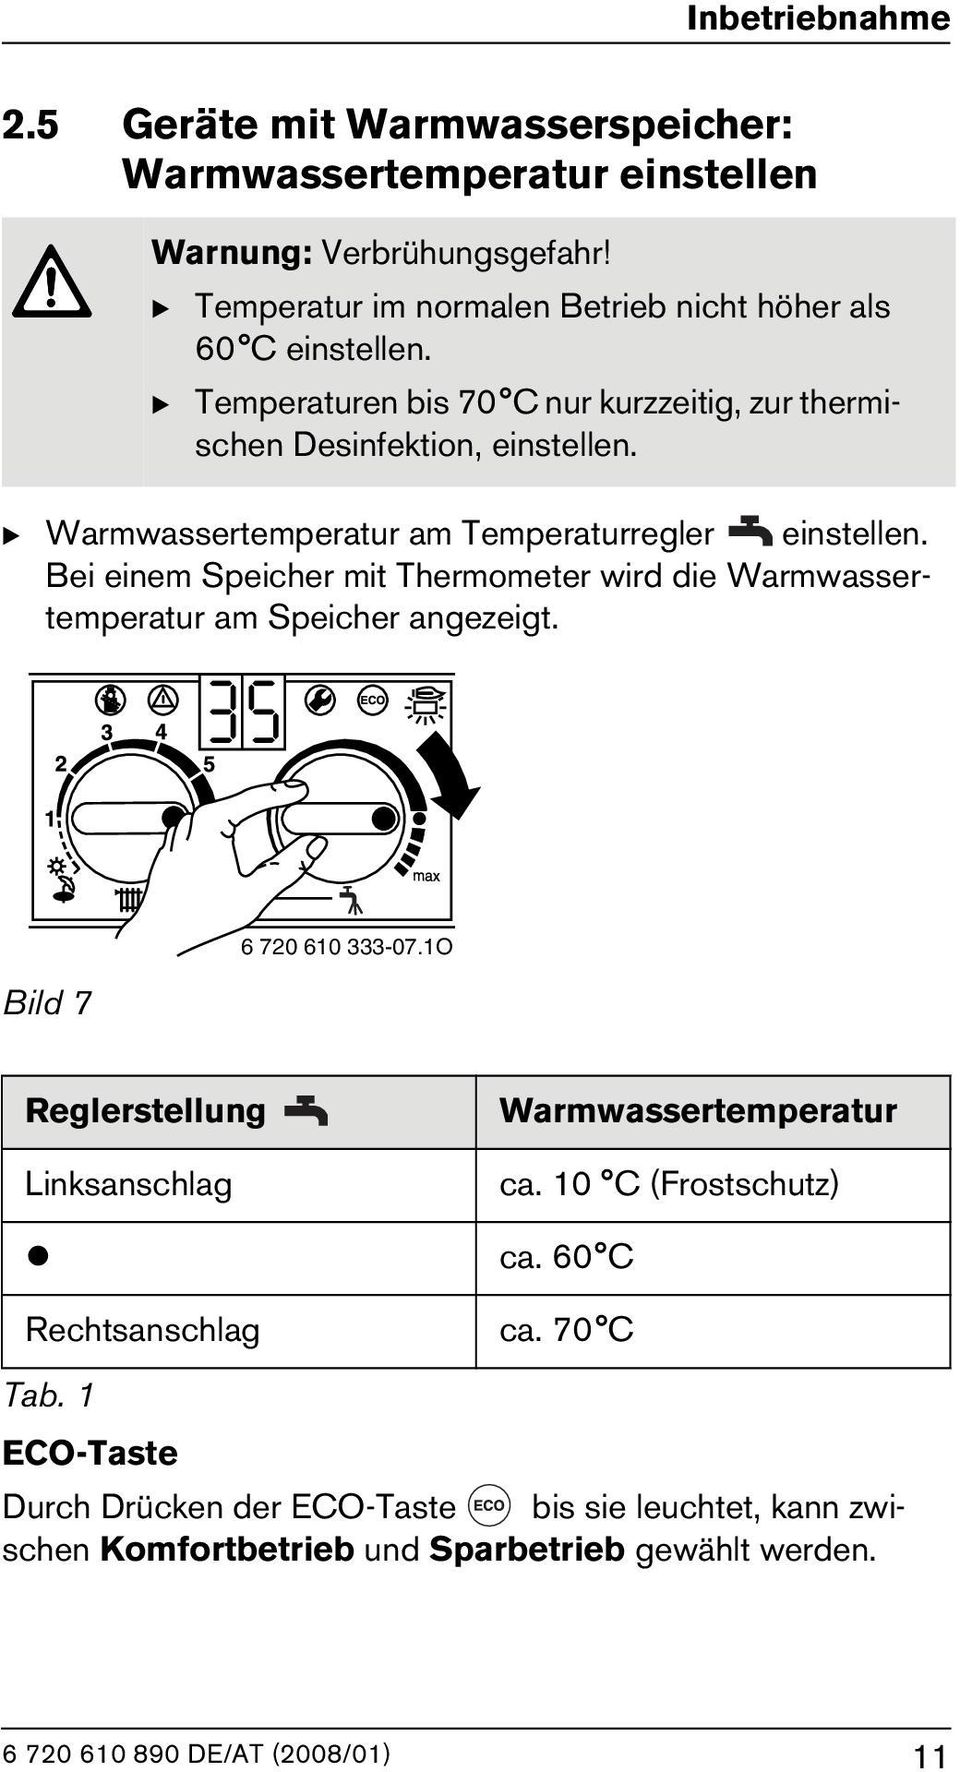 B Warmwassertemperatur am Temperaturregler einstellen. Bei einem Speicher mit Thermometer wird die Warmwassertemperatur am Speicher angezeigt.